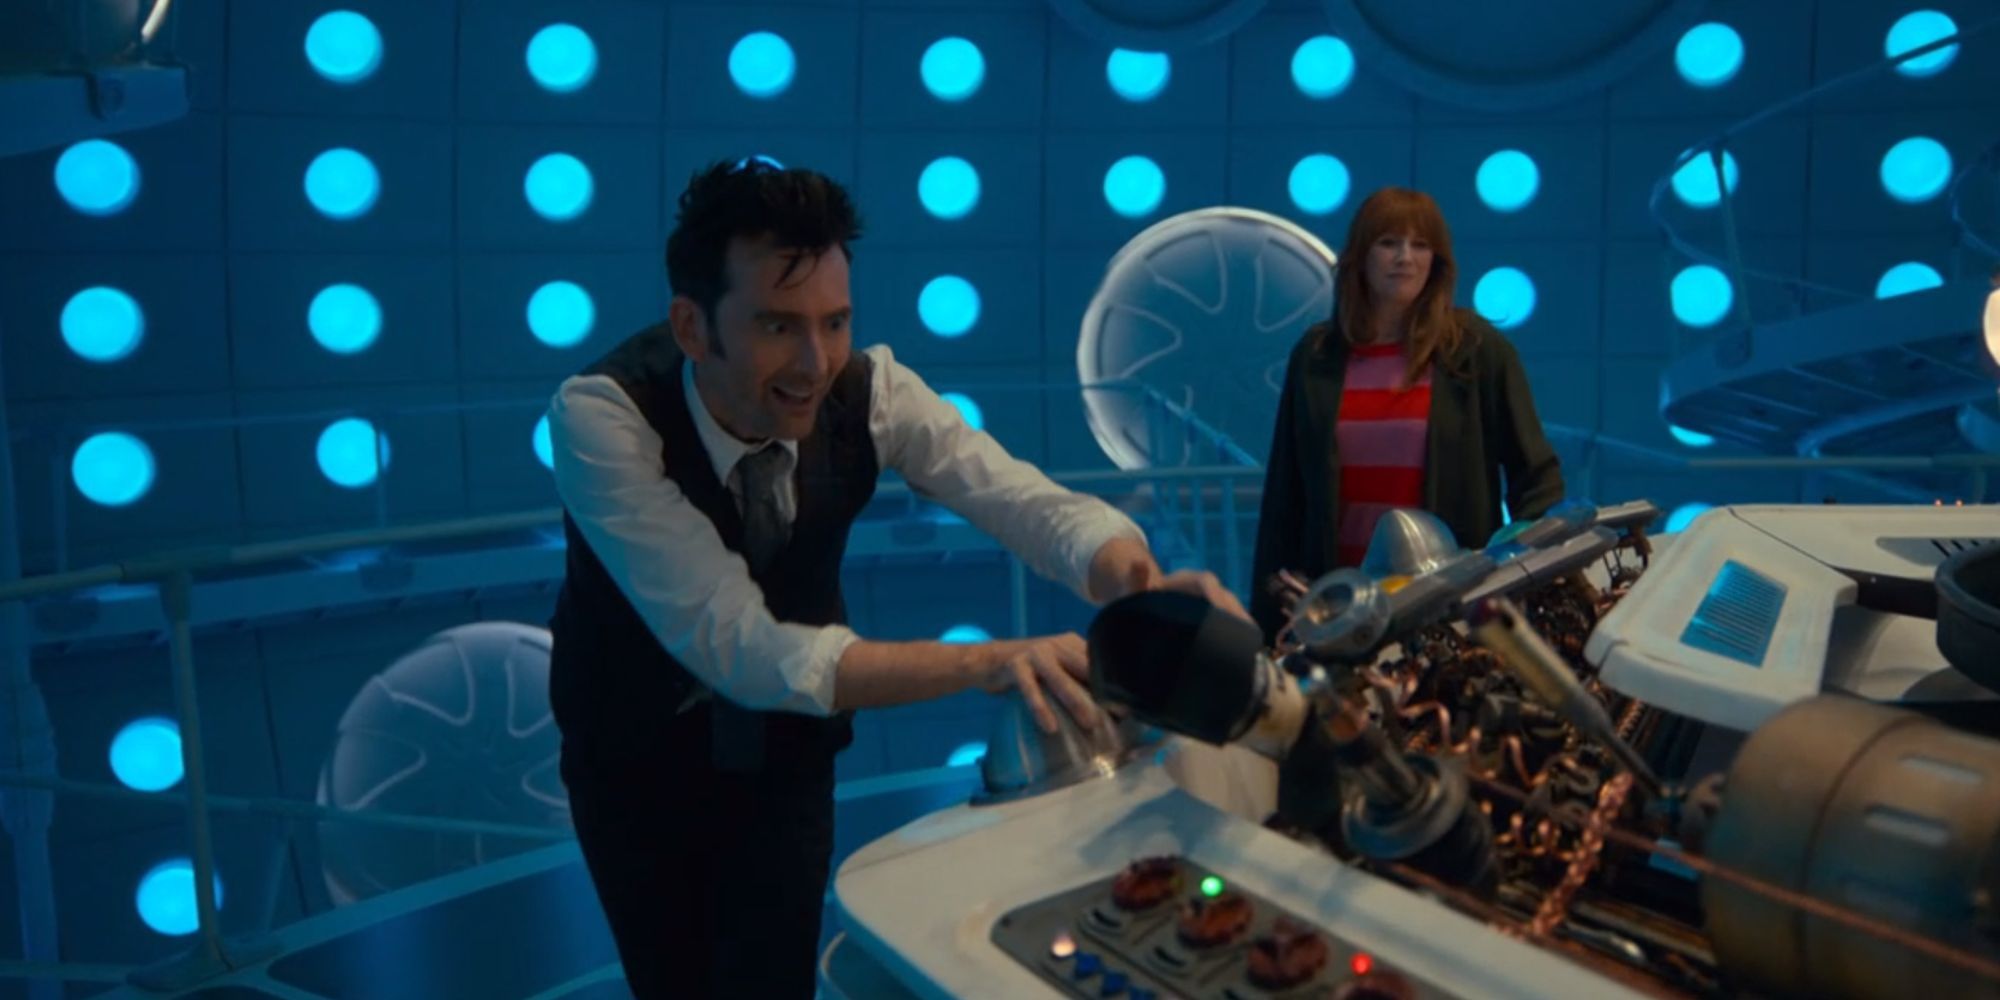 Doctor Who Cosplay recrea la escena de la TARDIS del especial del 60 aniversario